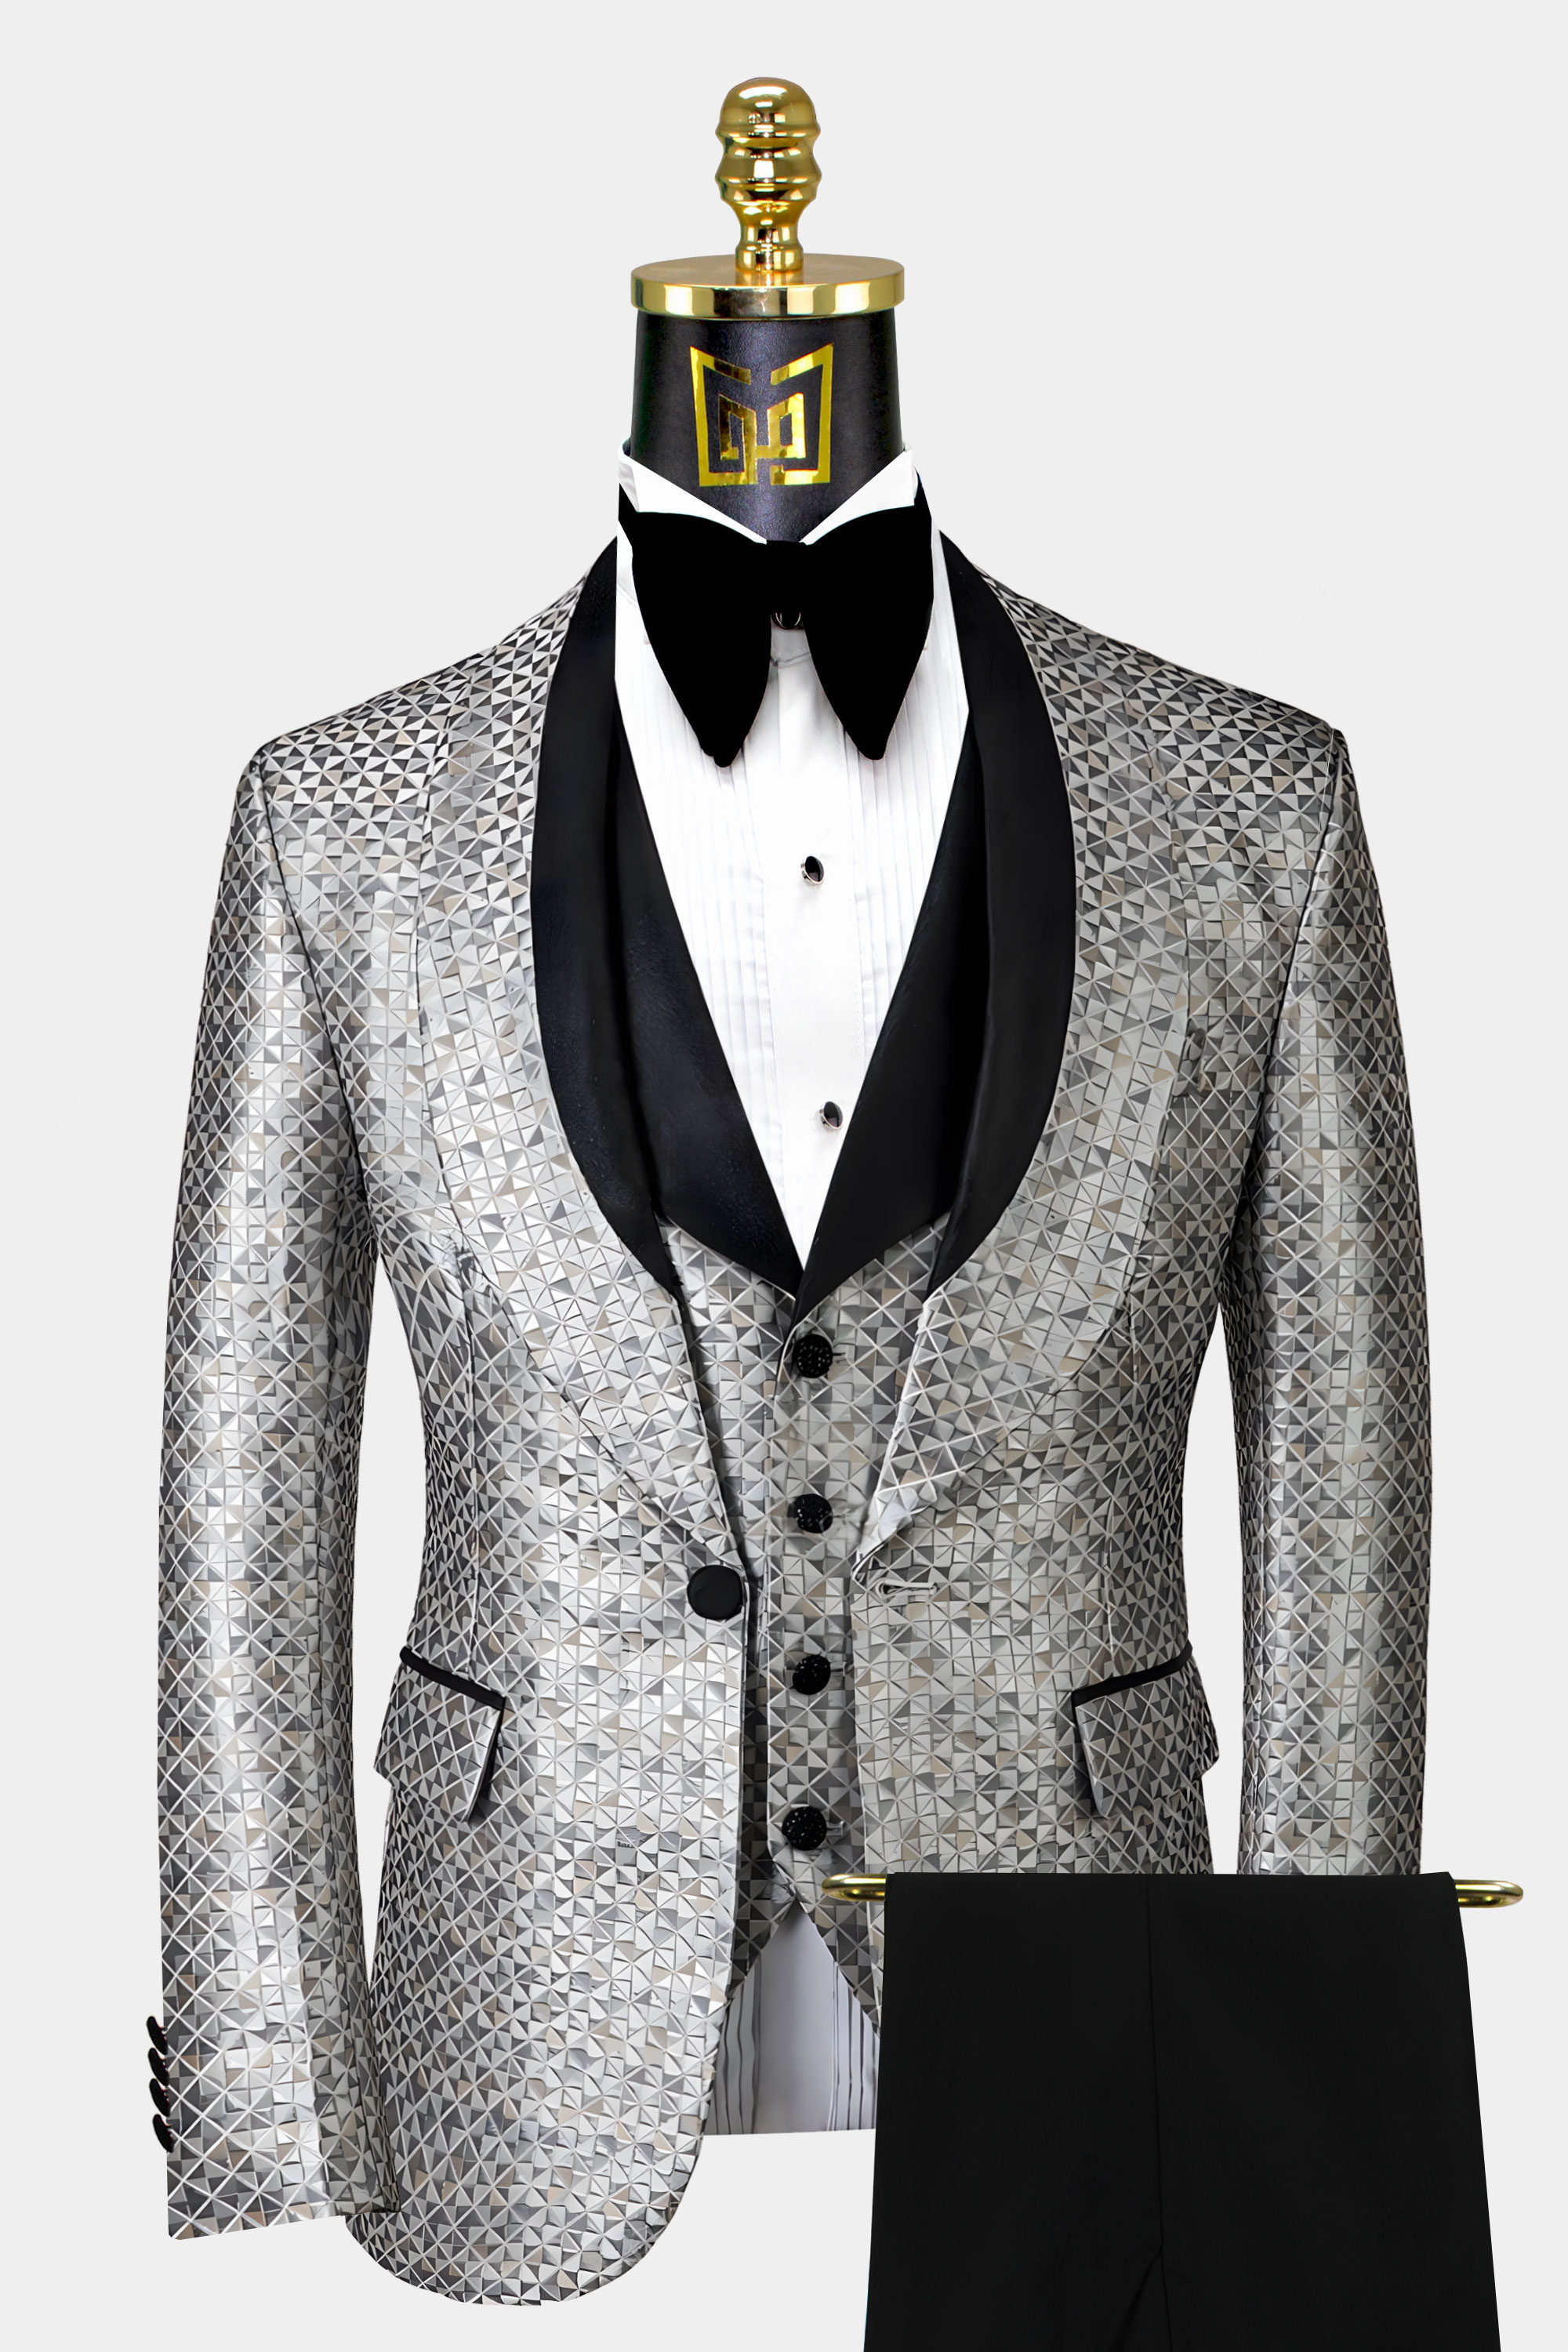 Silver-Grey-Tuxedo-Wedding-Groom-Suit-For-Men-from-Gentlemansguru.com